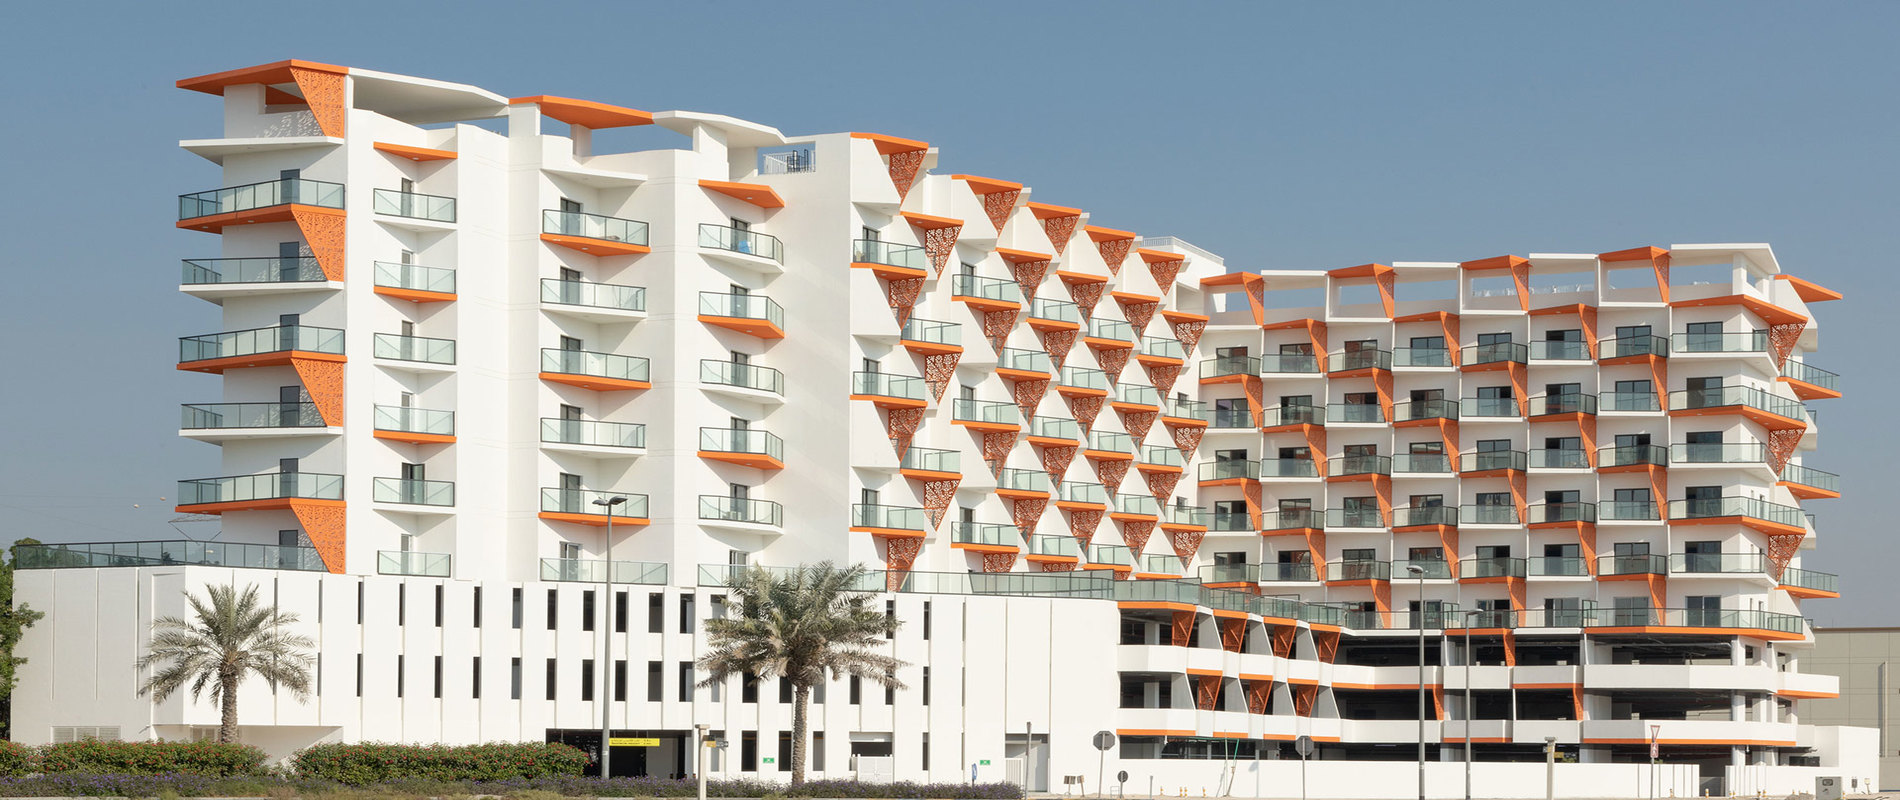 Binghatti Gate Apartments - Jumeirah Village Circle Dubai.